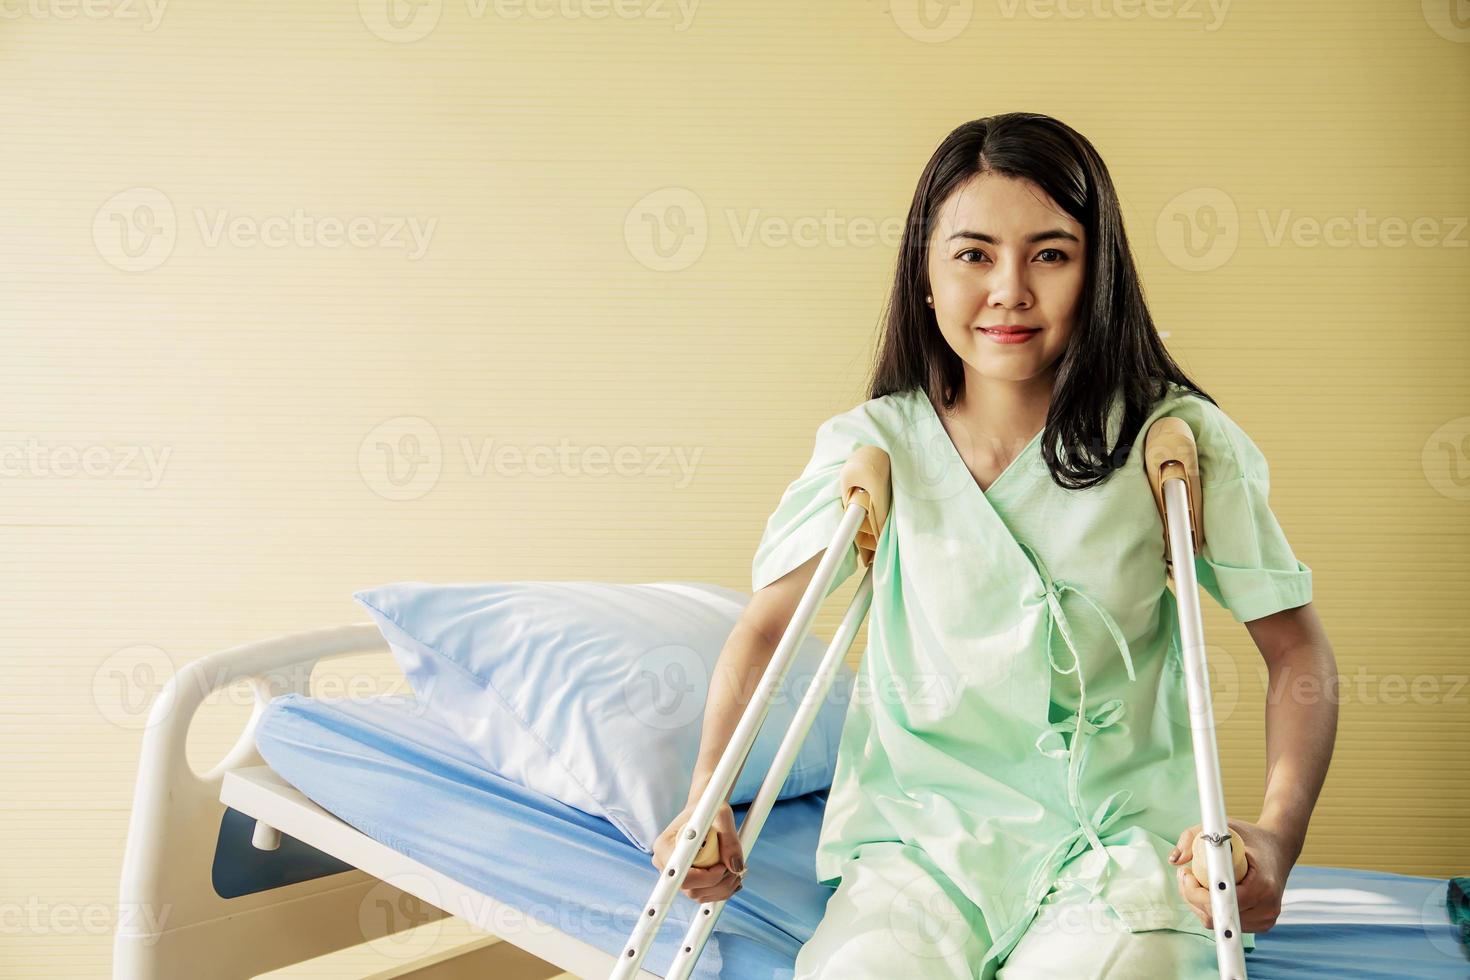 portrait d'une jeune patiente heureuse assise dans son lit avec des béquilles dans une chambre d'hôpital. concept de soins de santé et d'assurance médicale. photo